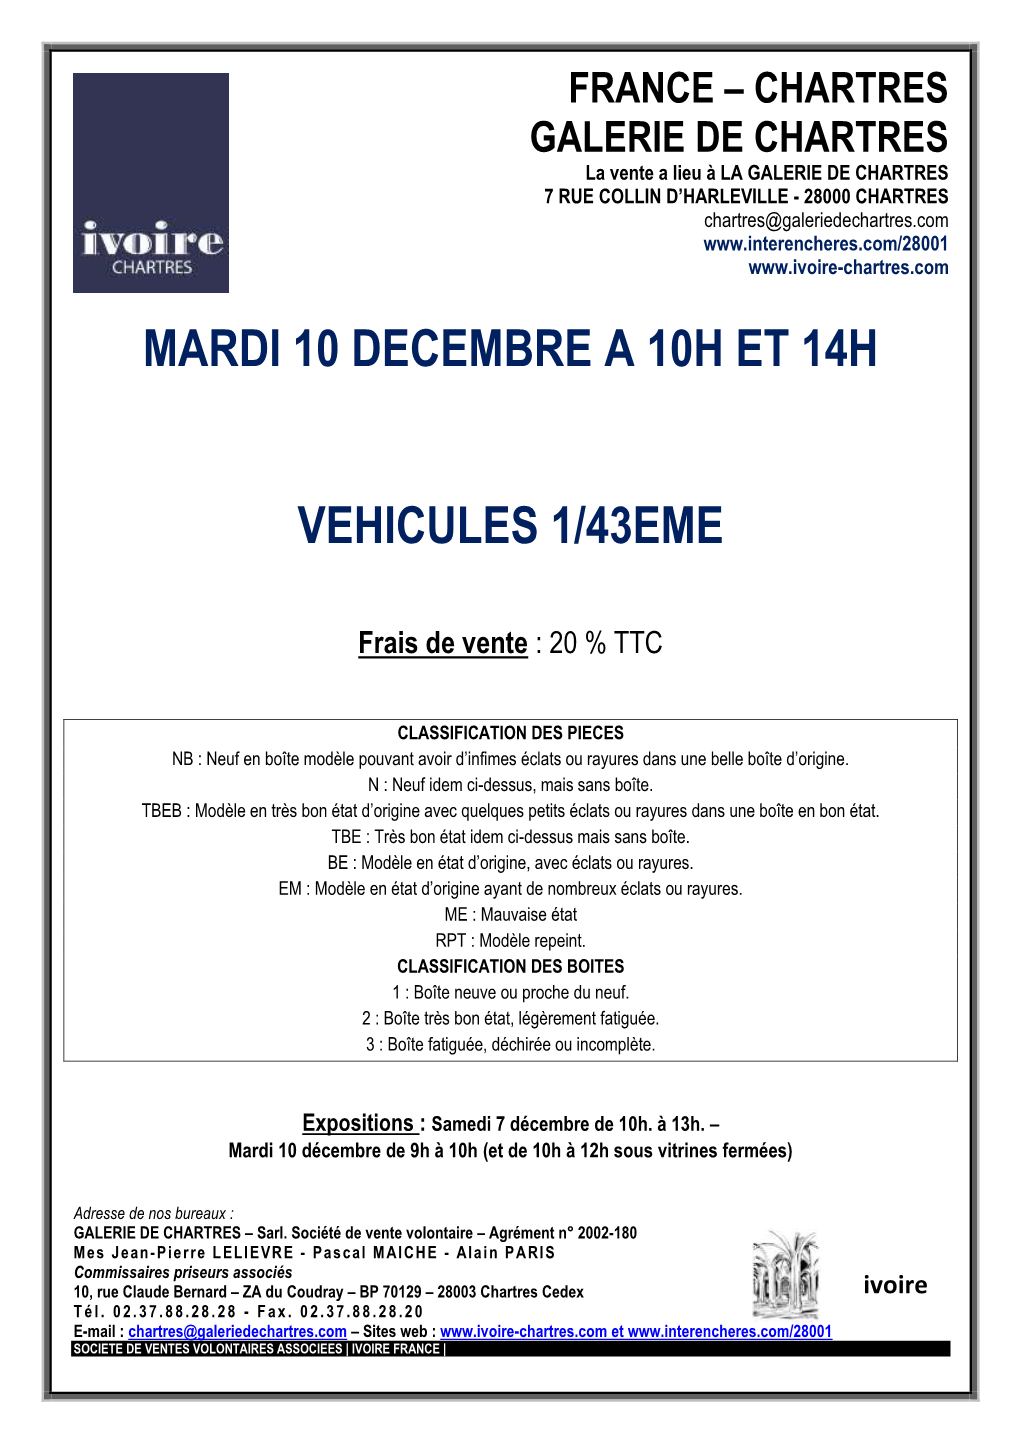 Mardi 10 Decembre a 10H Et 14H Vehicules 1/43Eme